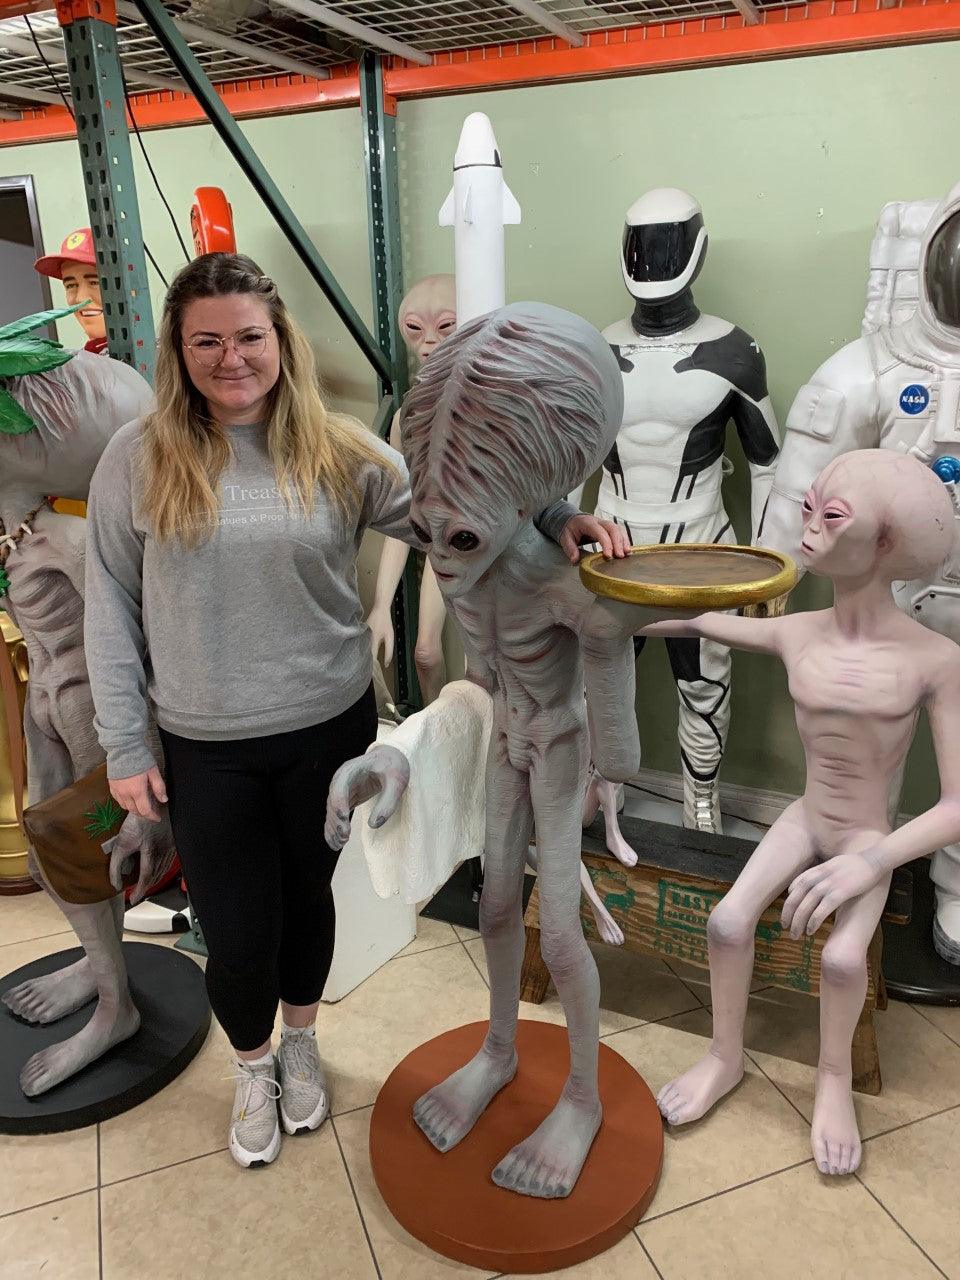 Huge Brain Alien Butler Life Size Statue - LM Treasures Prop Rentals 